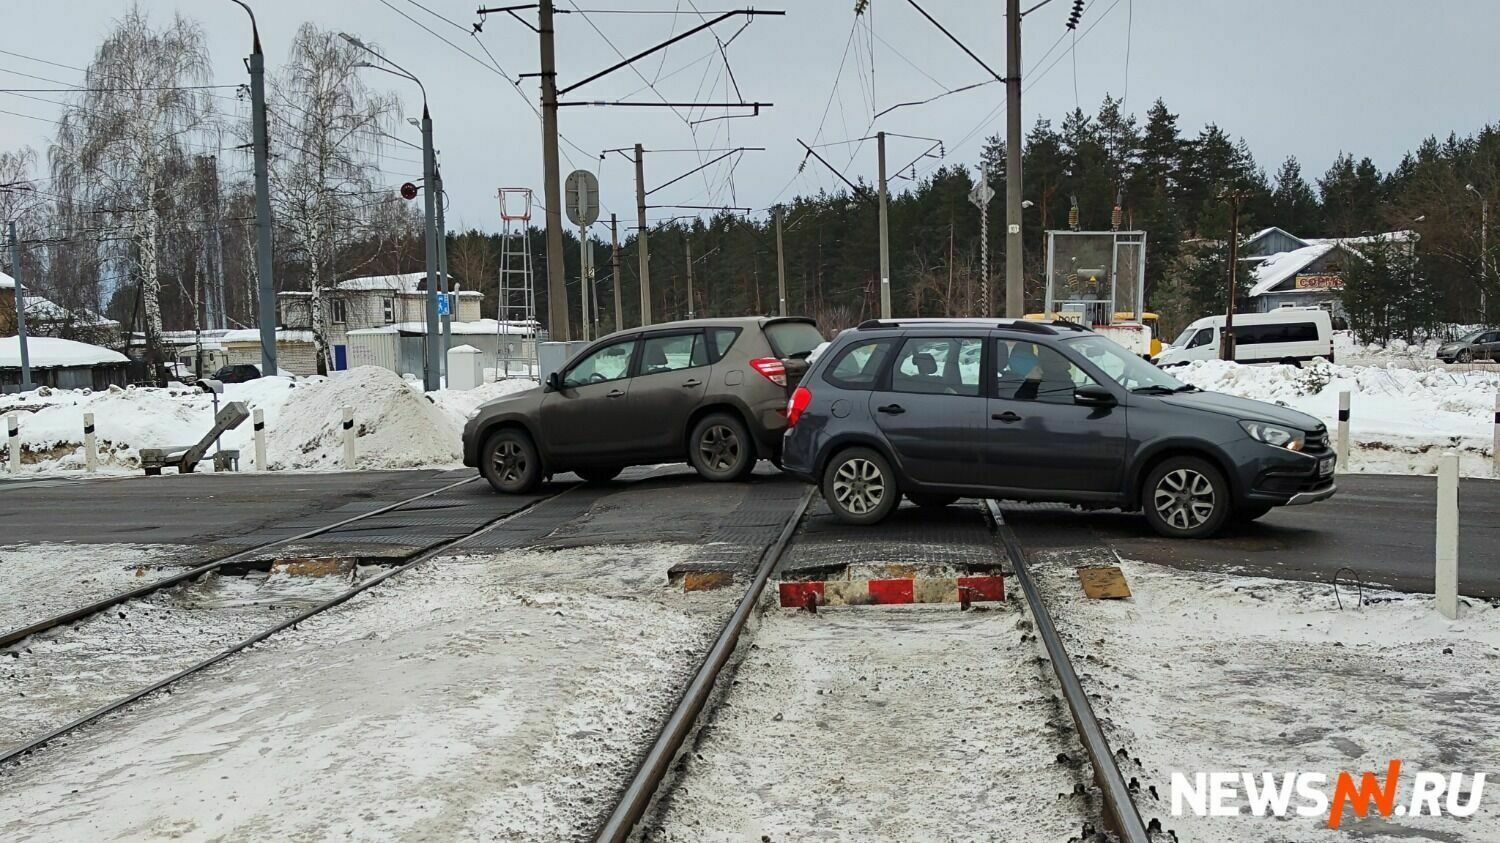 25 ДТП произошло на нижегородских железнодорожных переездах за три года